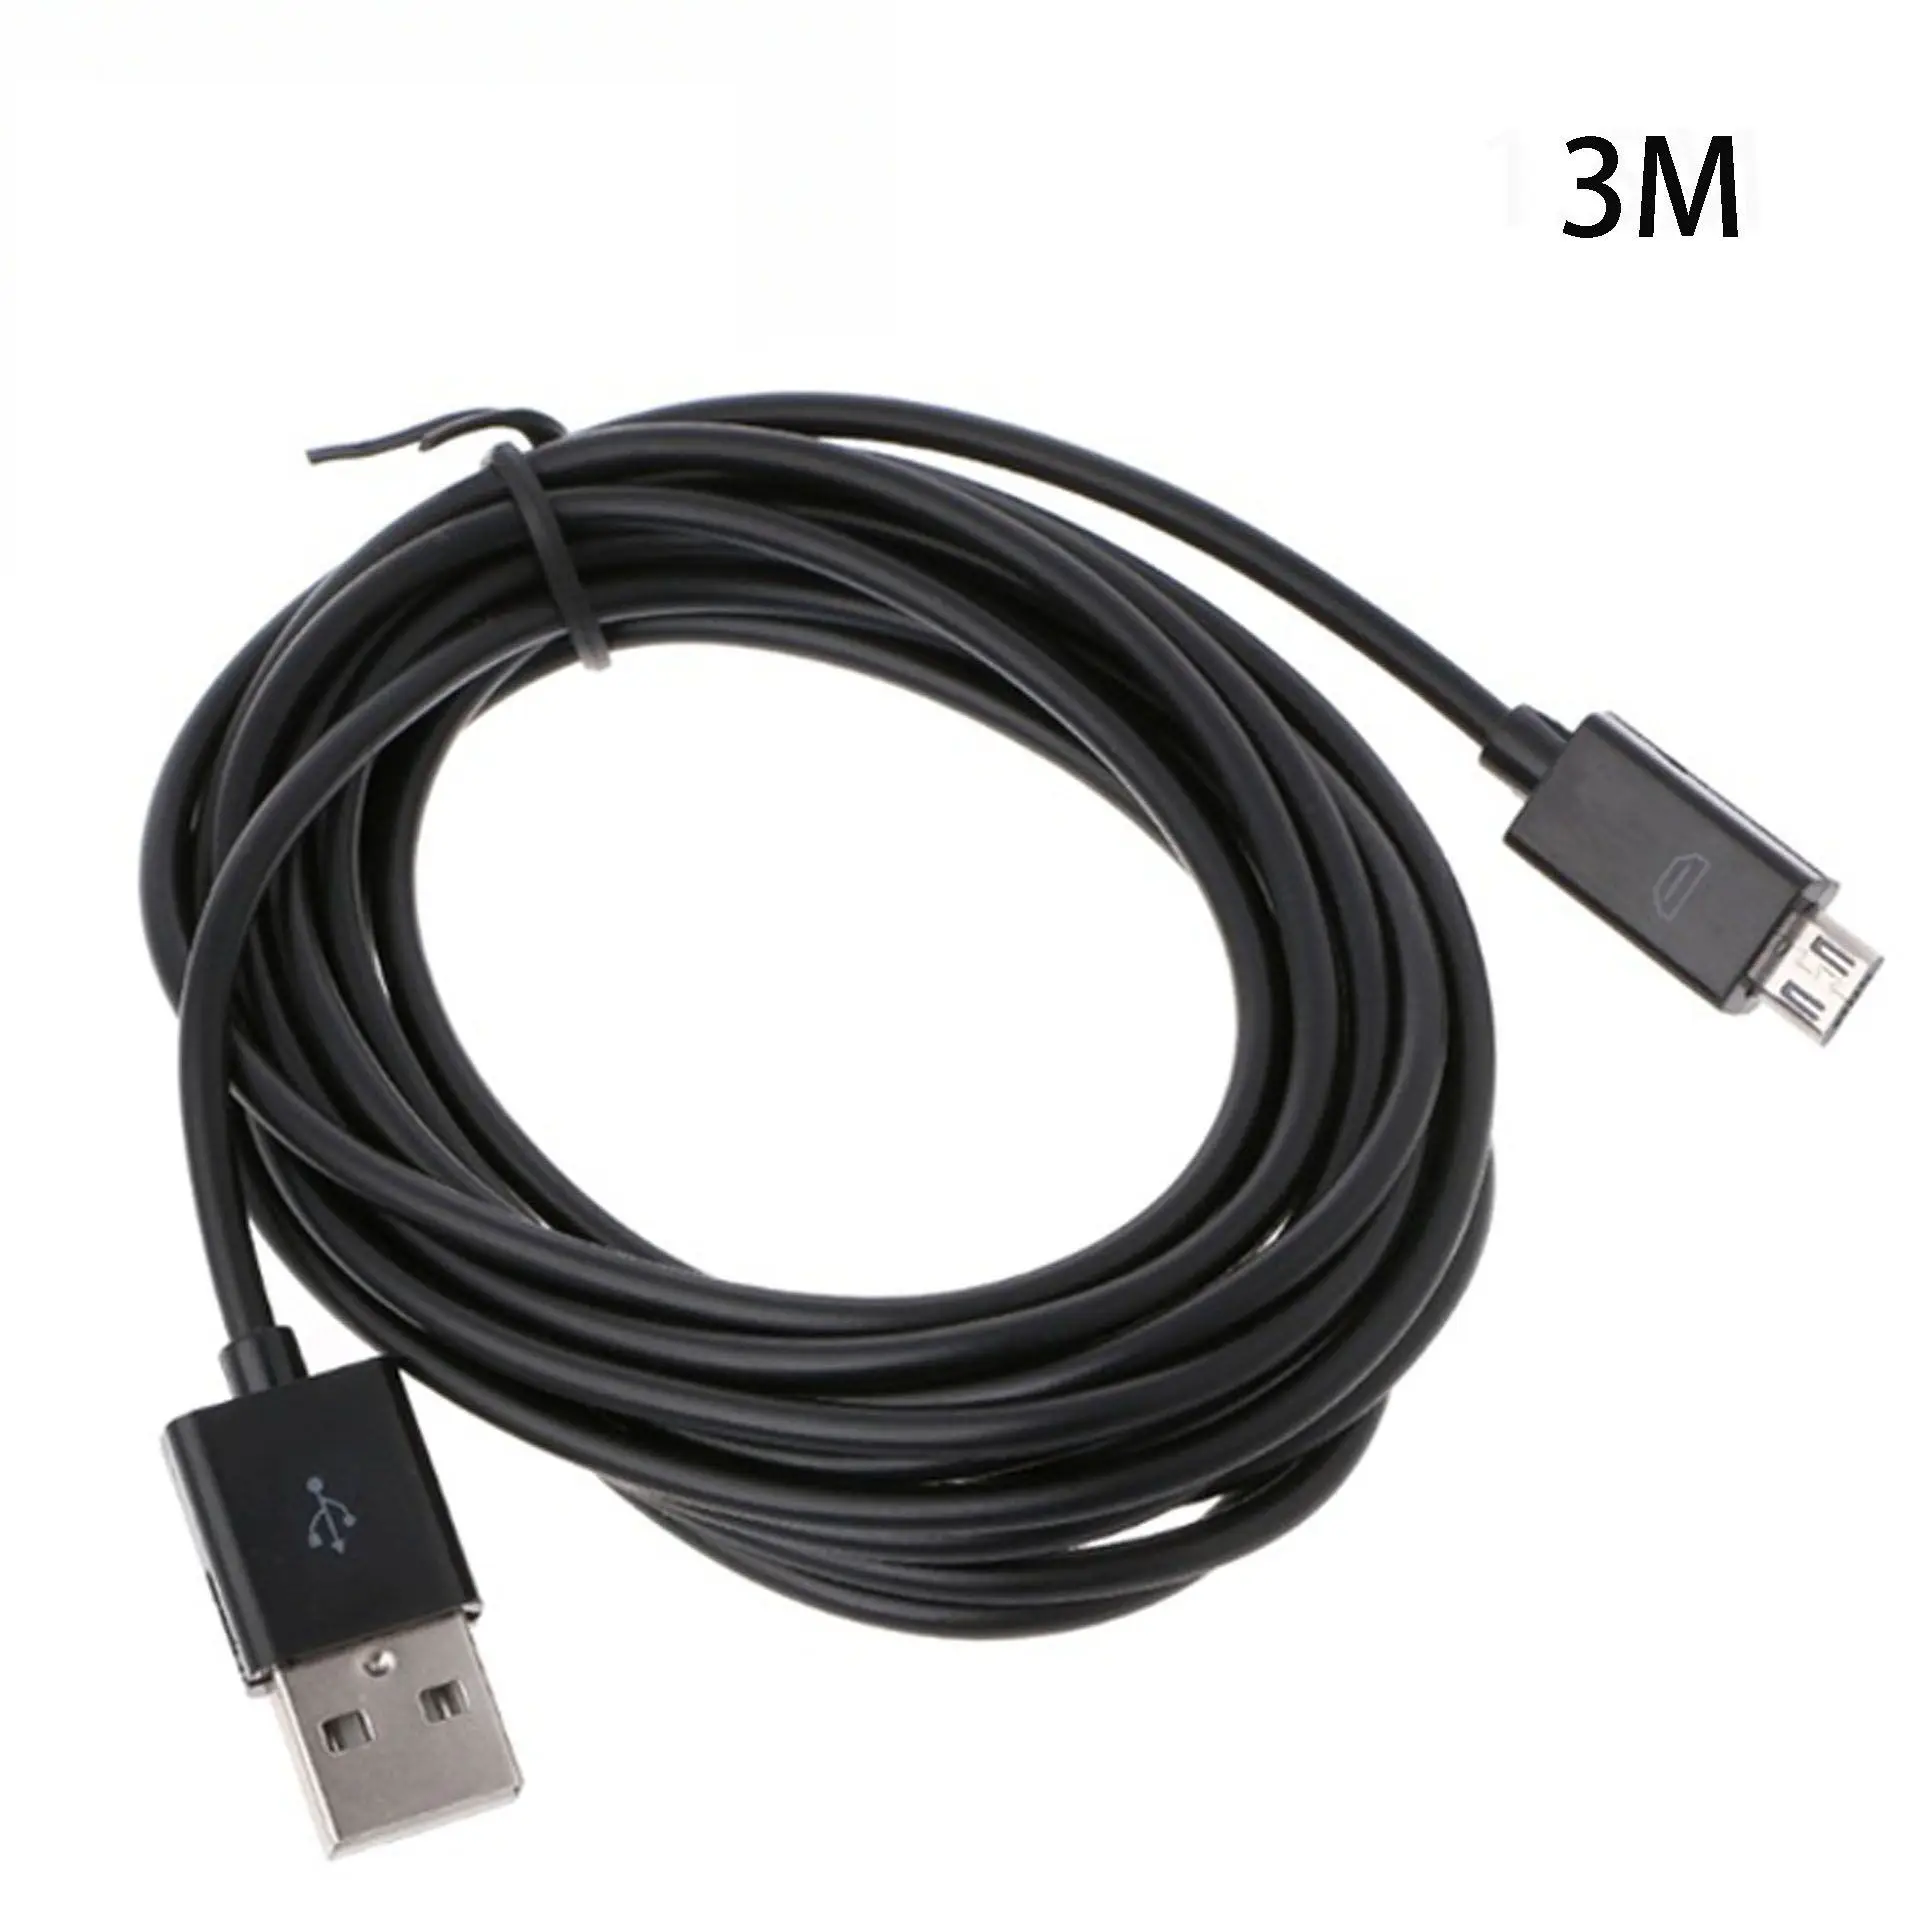 Micro USB кабель зарядного устройства для PS4/Xbox один контроллер шнур питания для sony Playstation 4 геймпад игровые аксессуары - Цвет: 3M